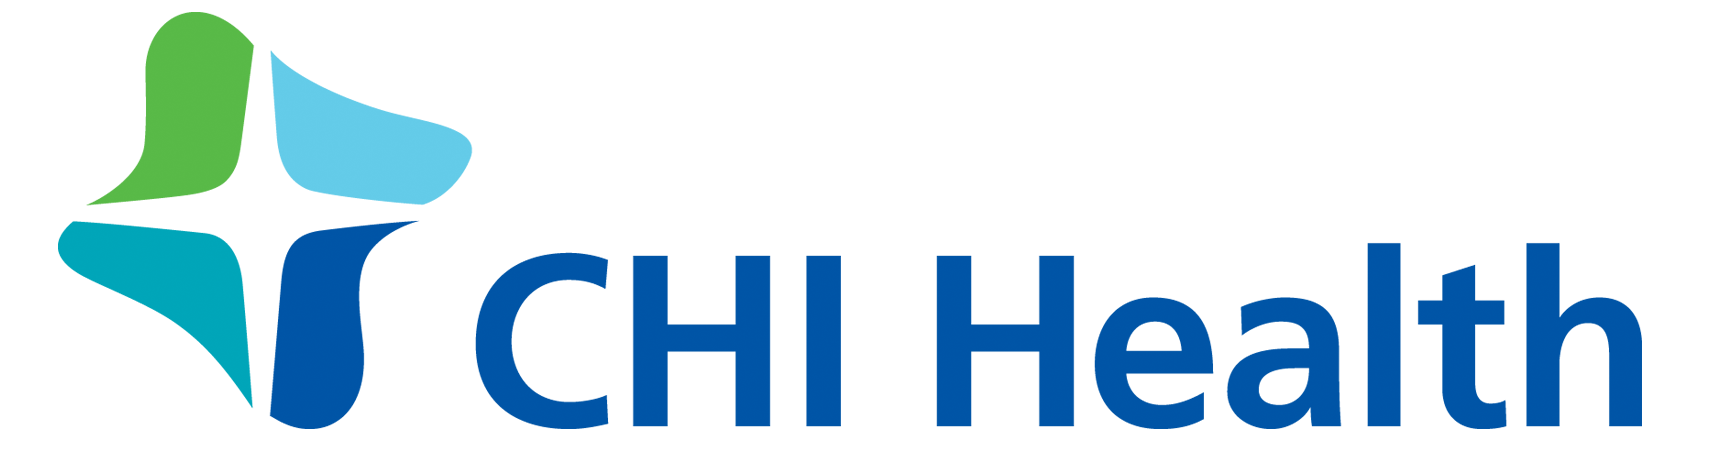 CHI-Health-Logo.png